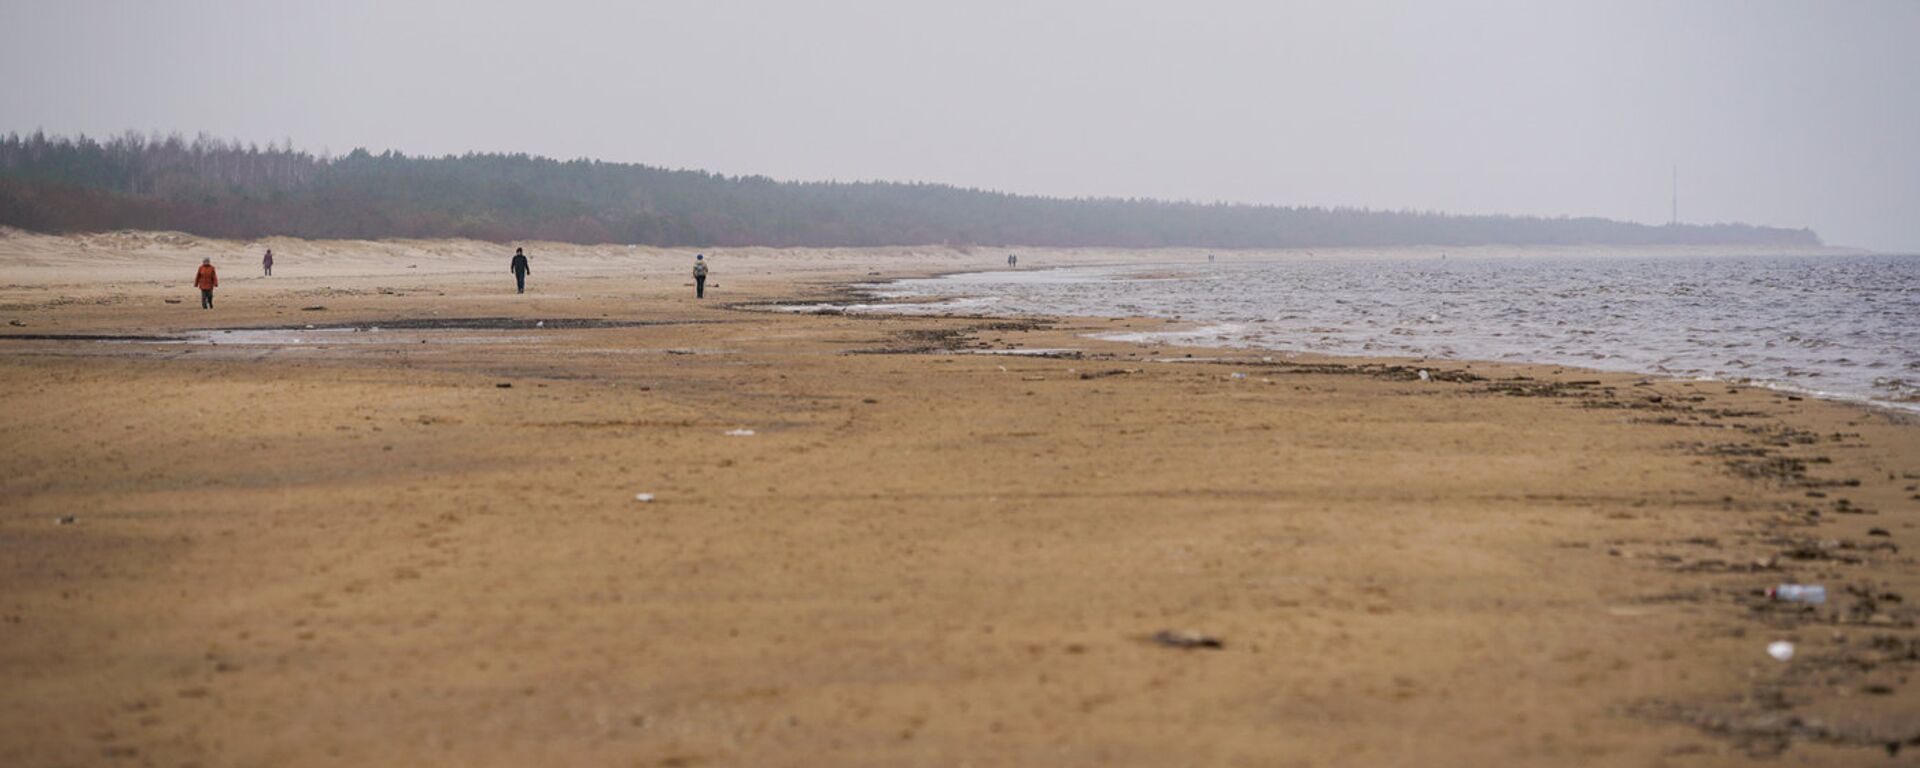 Пляж Вецаки - Sputnik Латвия, 1920, 31.05.2018